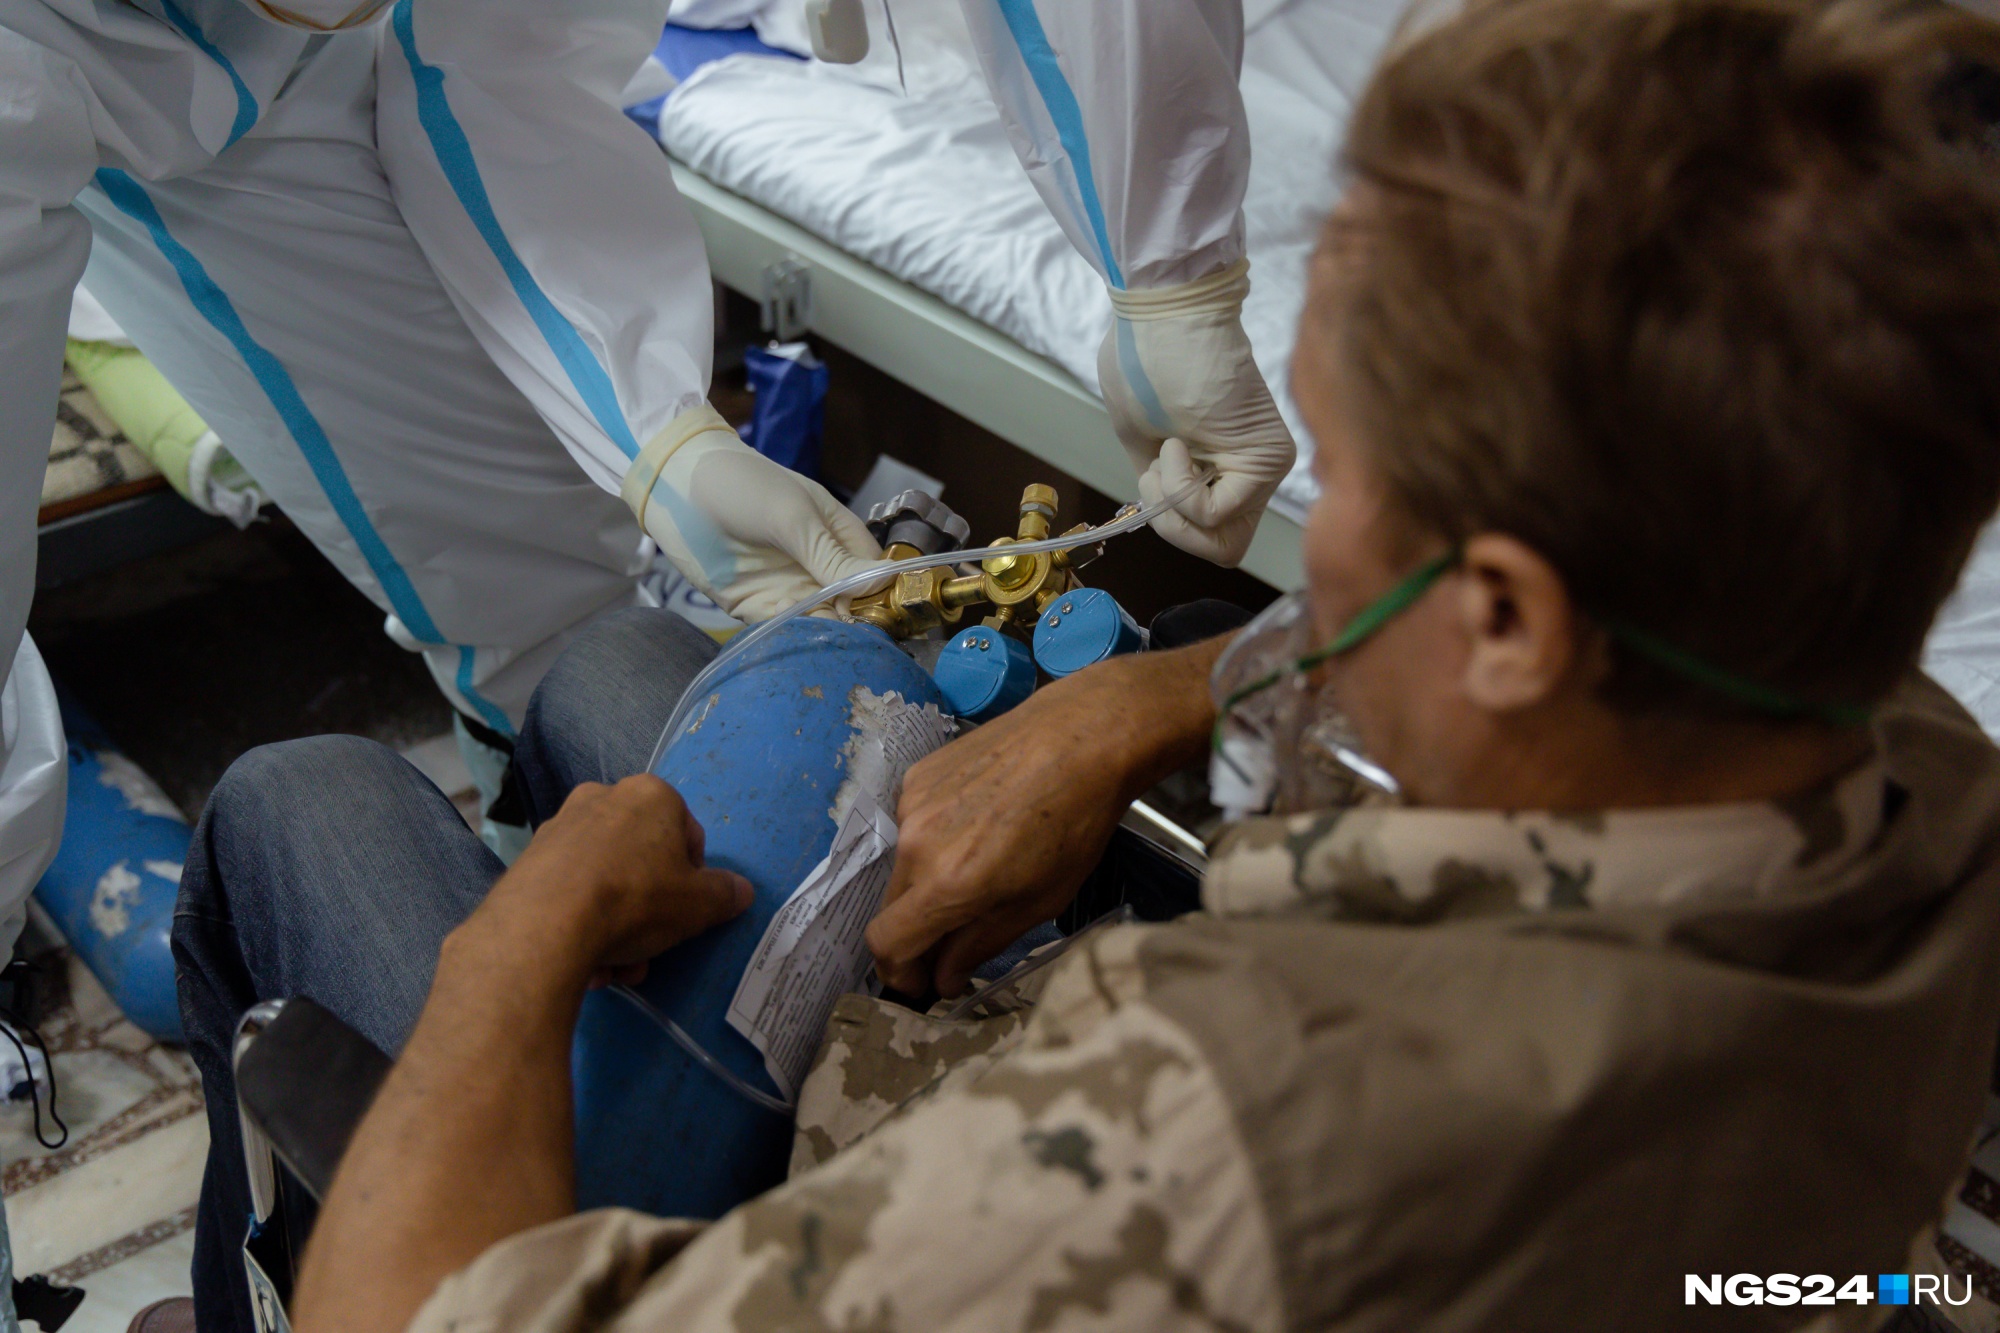 Пациентов возят на обследования и процедуры прямо на кислороде — баллоны они держат на коленях